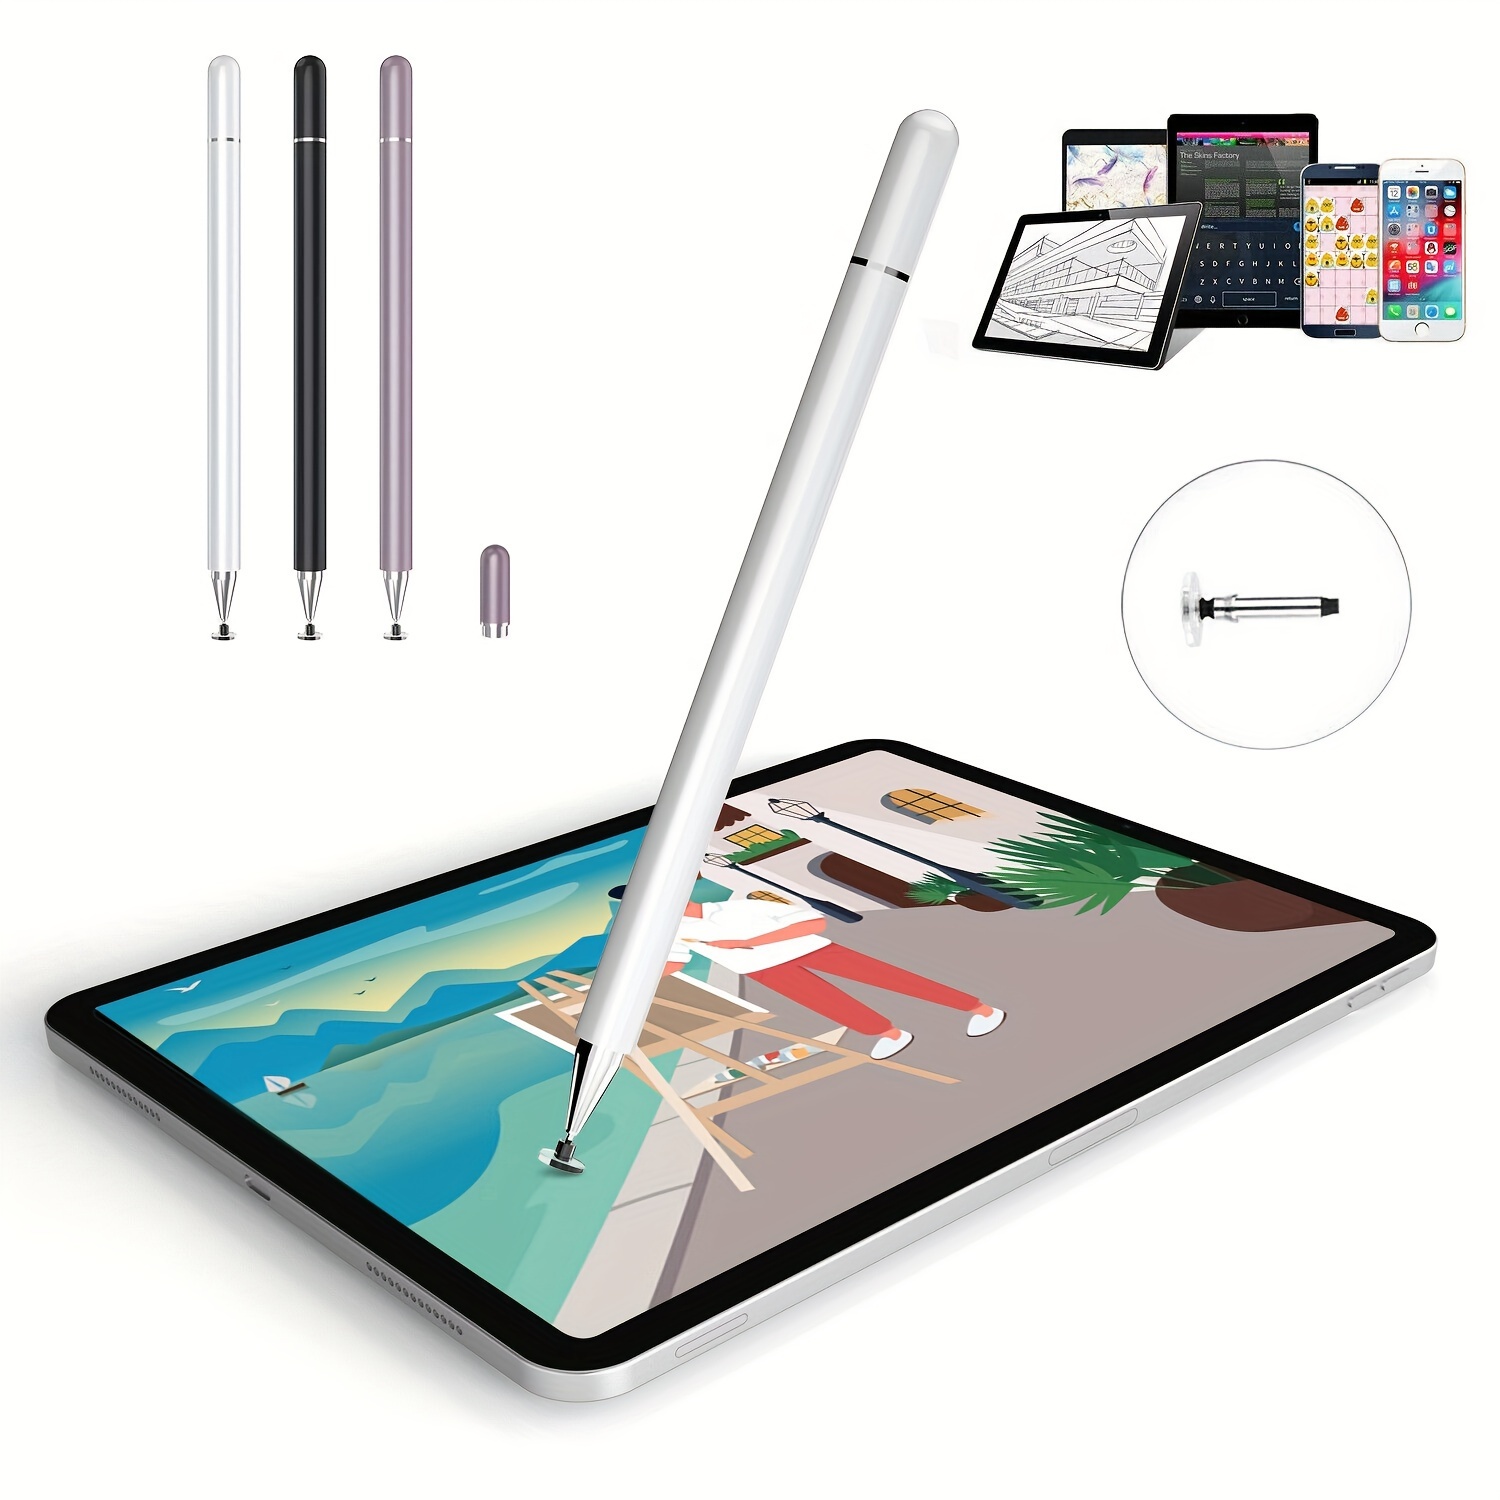 Stylus pen per scrivere e disegnare sul tuo tablet e smartphone